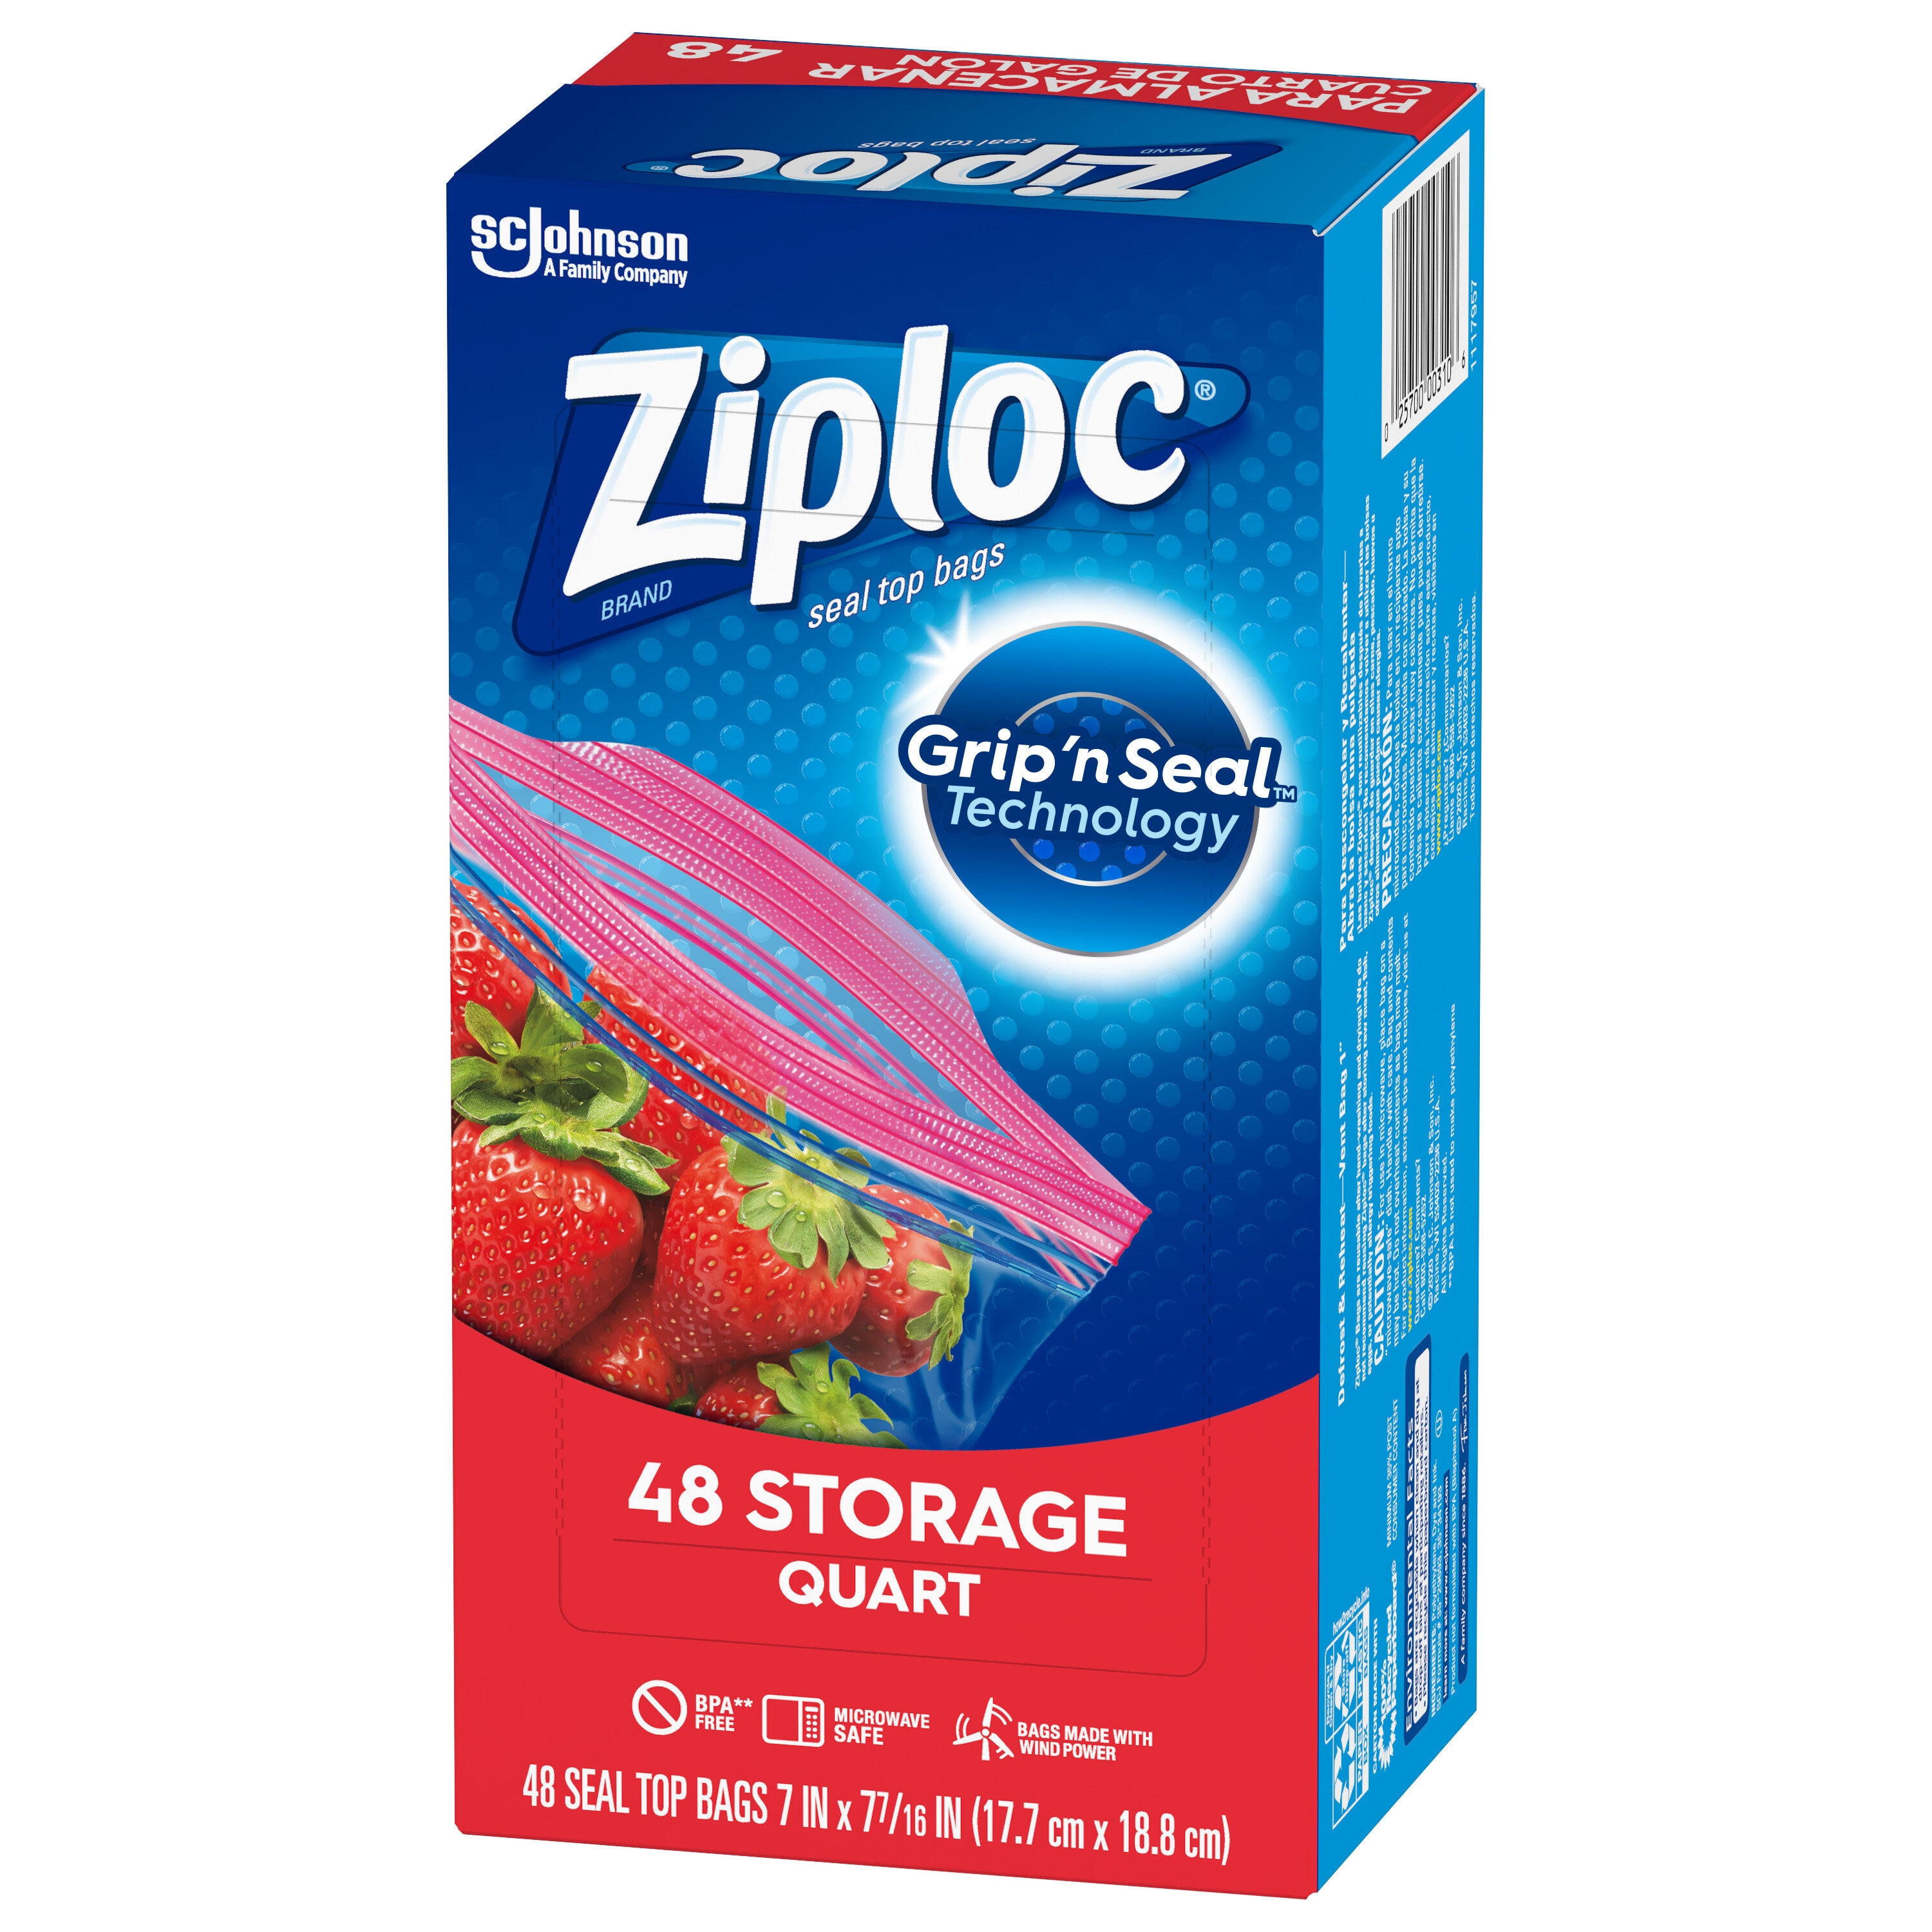 Ziploc Food Storage Bags Quart Size Grip 'n Seal - 24 Ct - Pack of 2